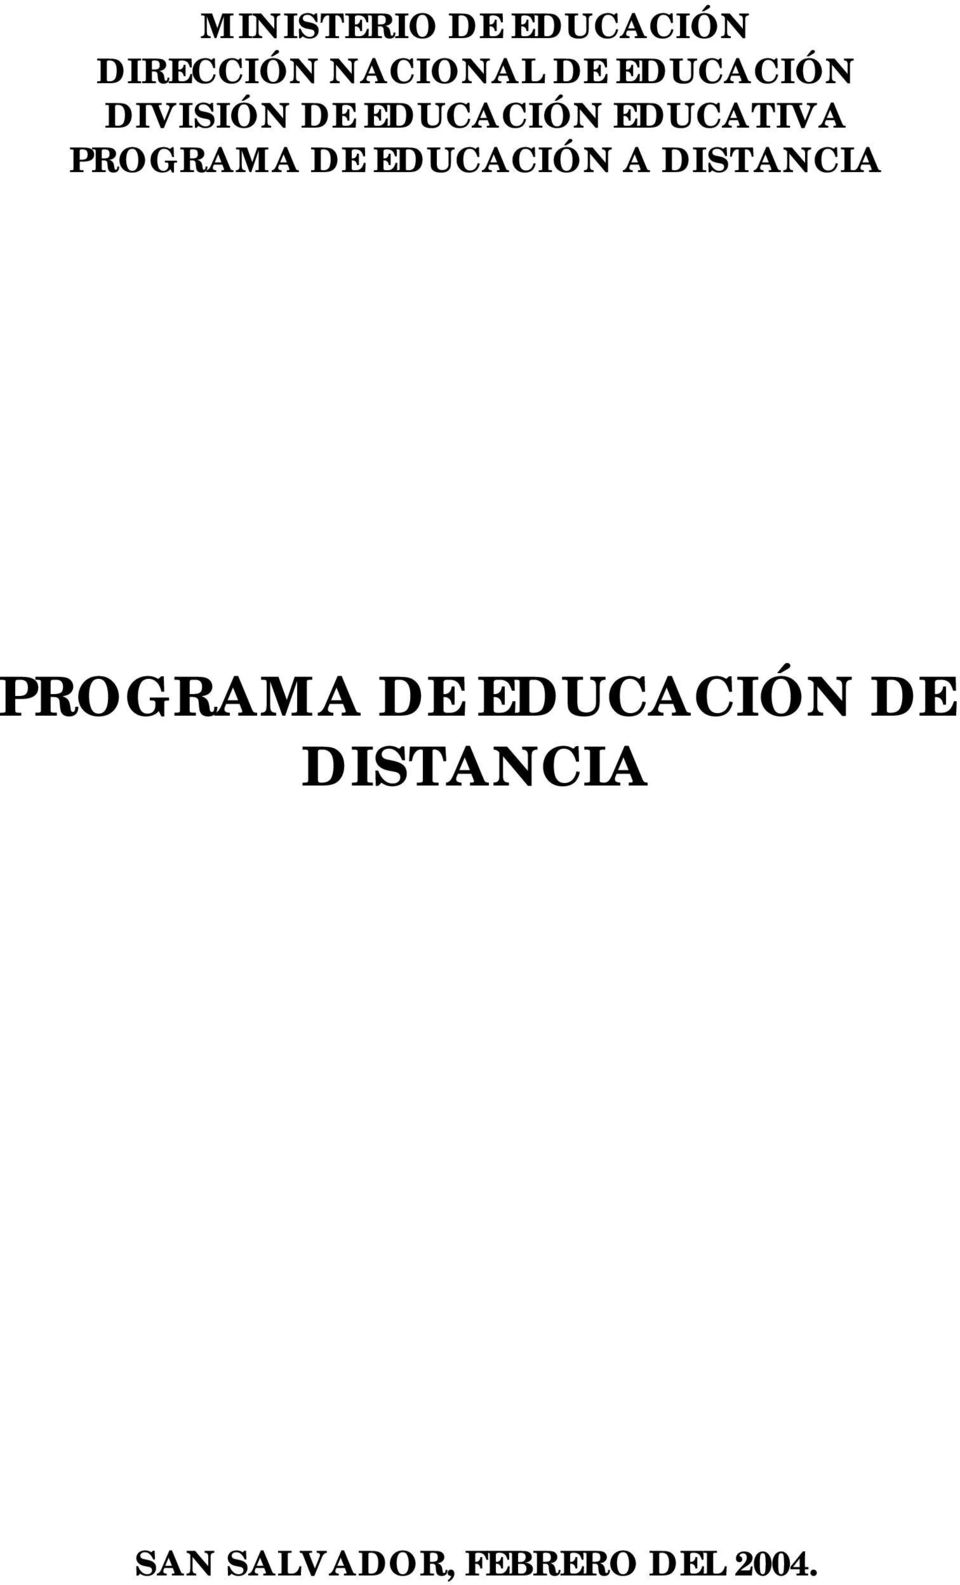 PROGRAMA DE EDUCACIÓN A DISTANCIA PROGRAMA DE